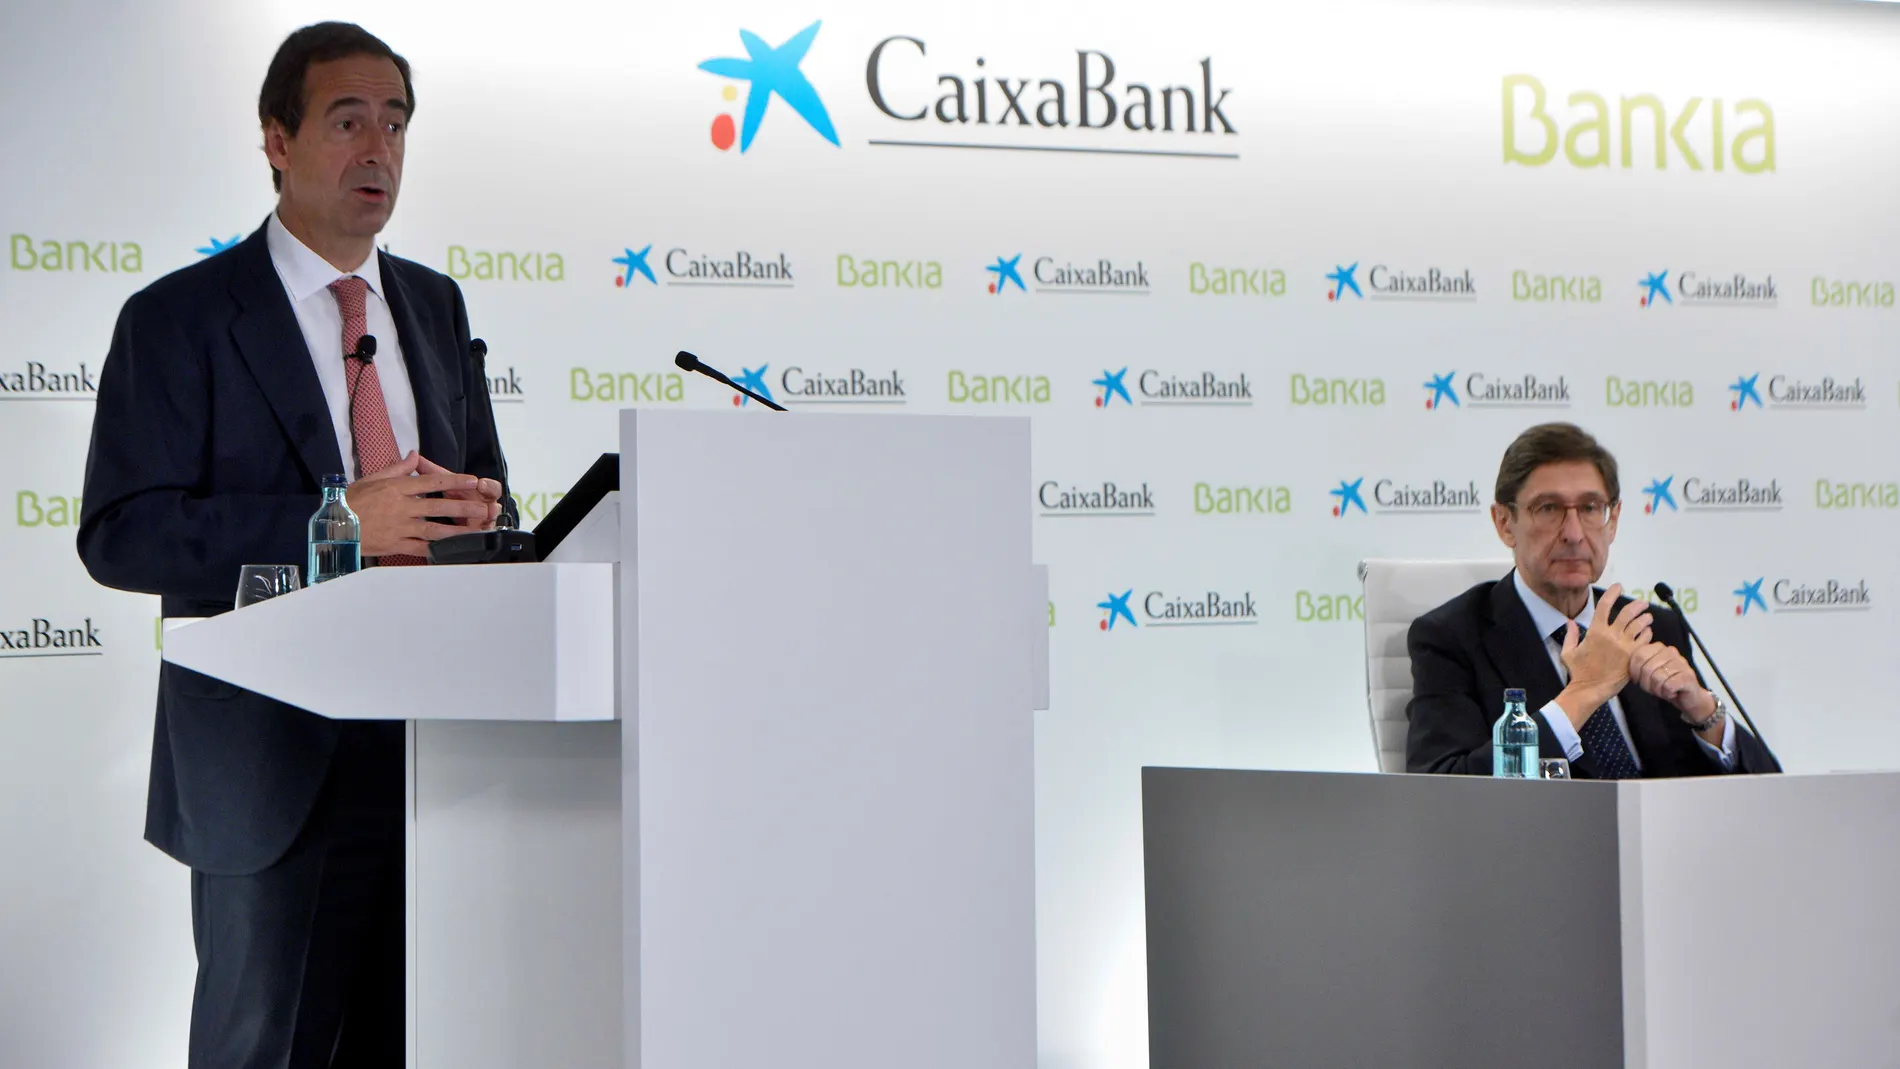 El presidente de Bankia, que será presidente ejecutivo de la nueva entidad, José Ignacio Goirigolzarri, y del consejero delegado de CaixaBank, que será consejero delegado de la nueva entidad, Gonzalo Gortázar